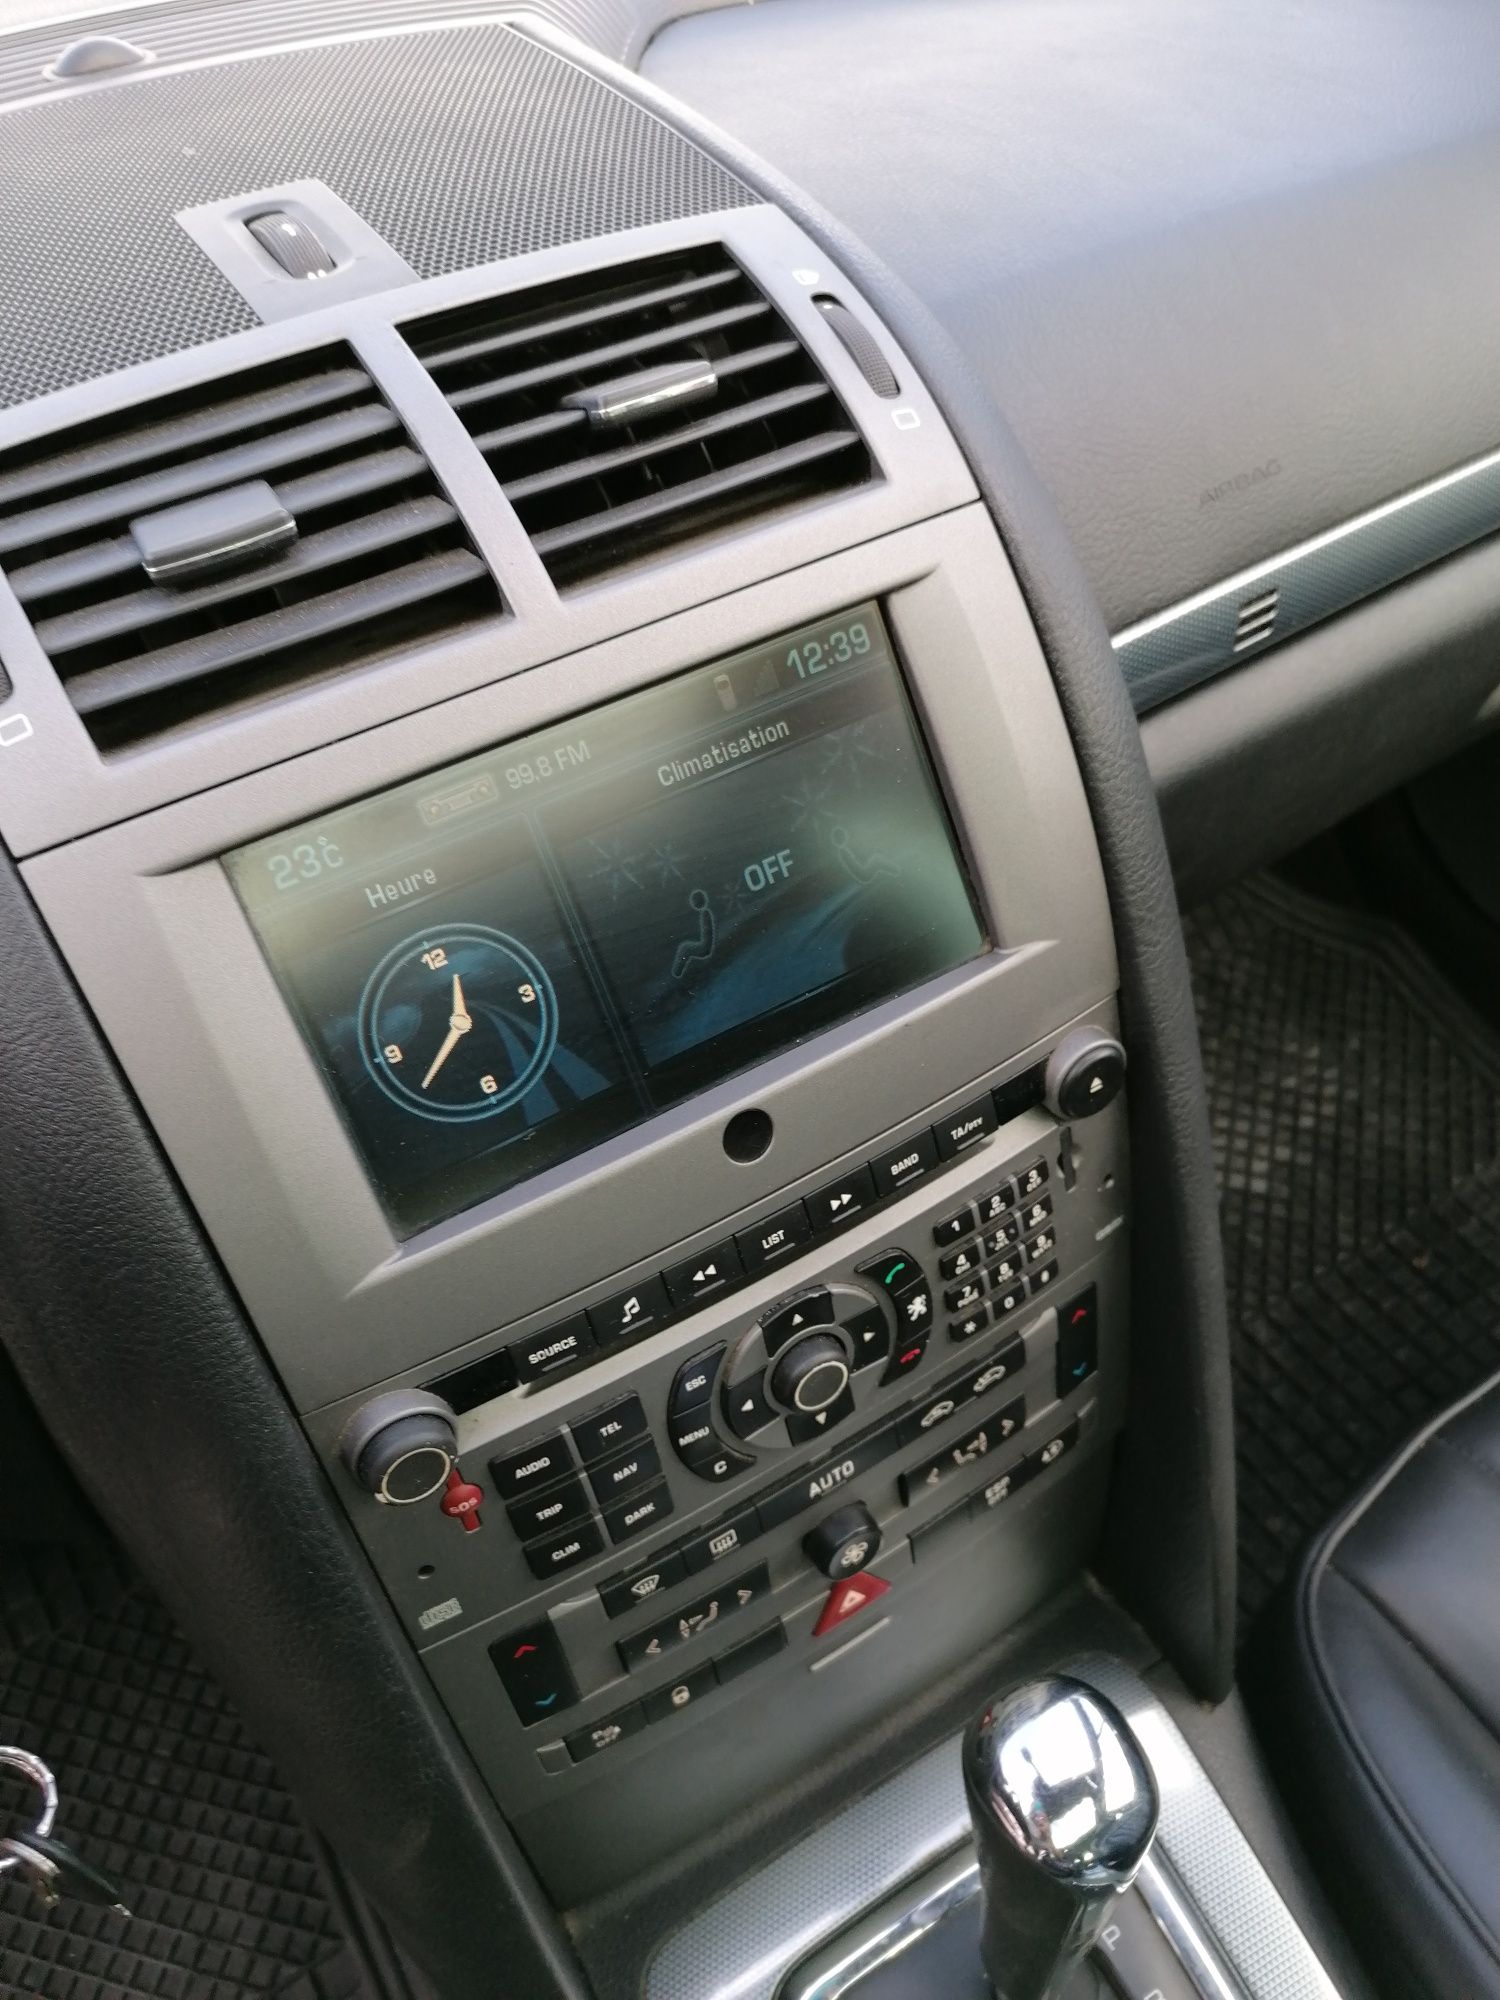 Navigatie+linie audio JBL Peugeot 407